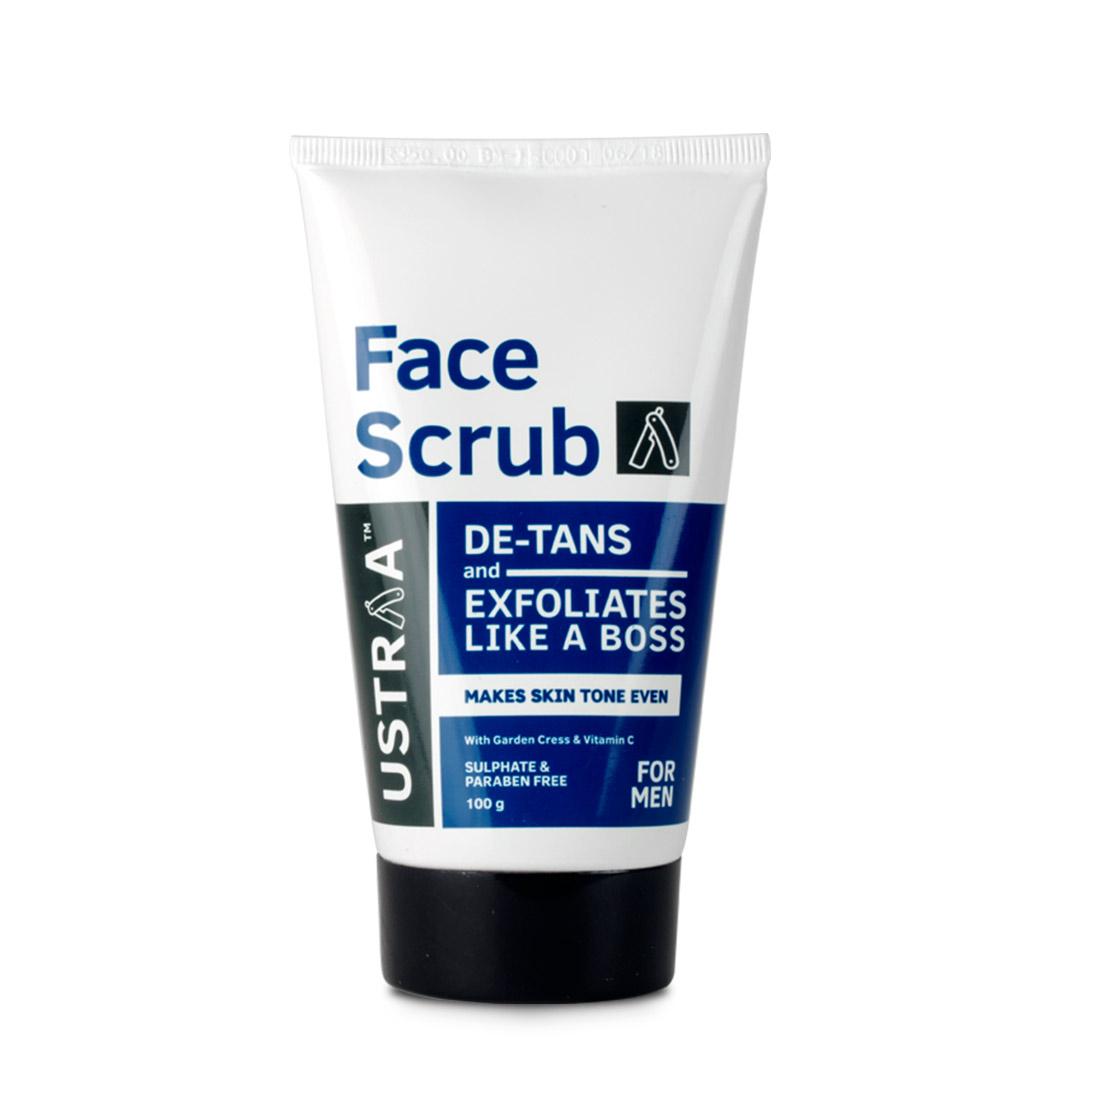 De-Tan Face Scrub For Men - 100g